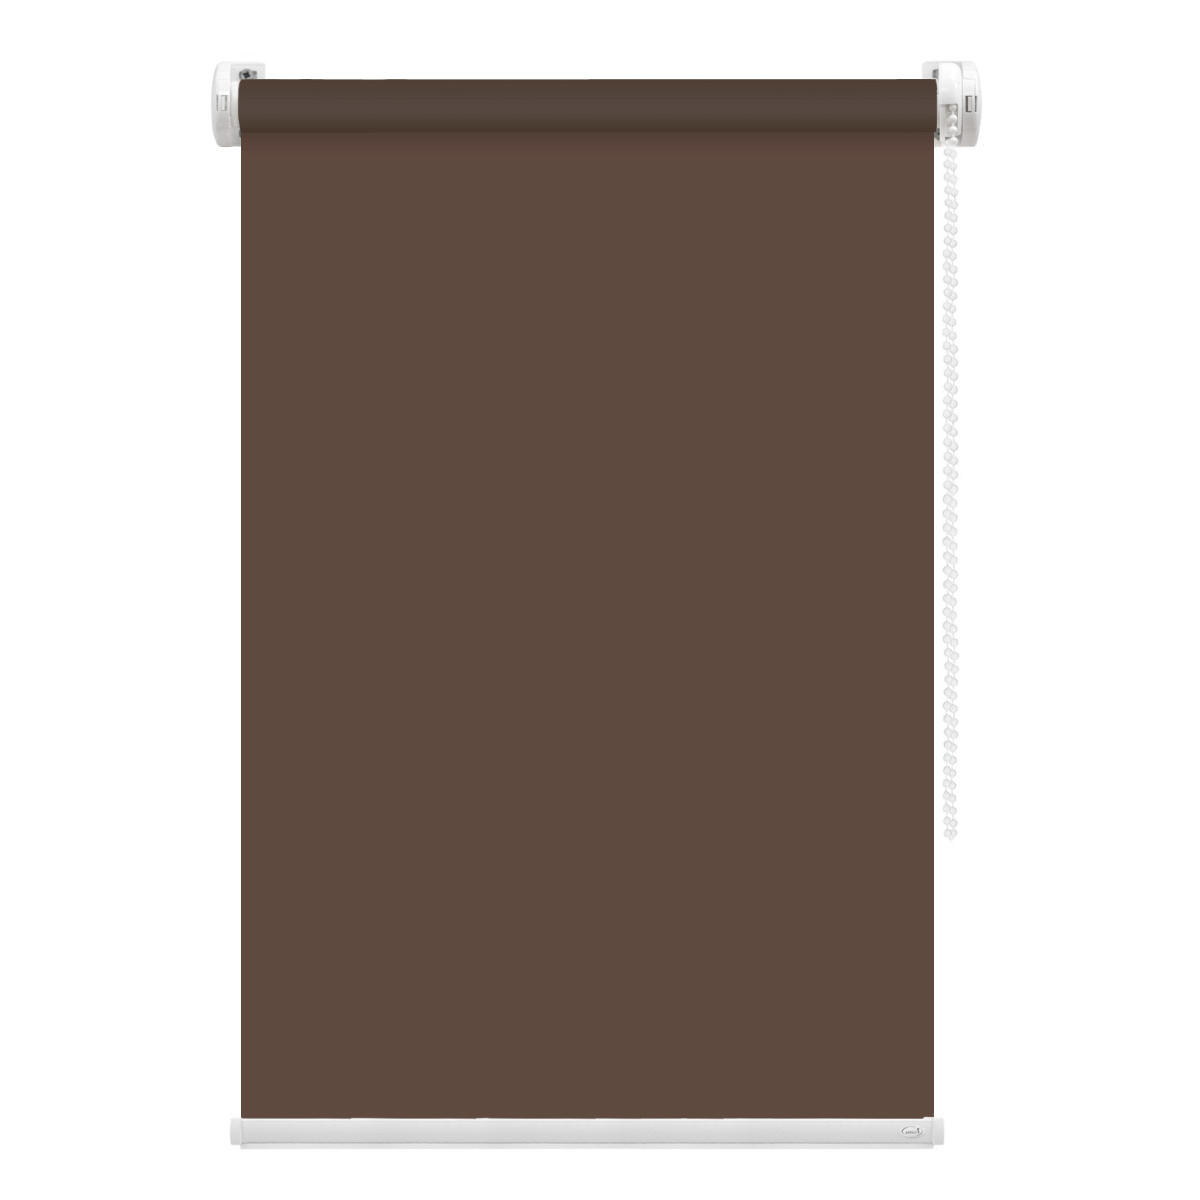 Рулонная штора FixLine Amigo Basic коричневая 75х160 см рулонная штора fixline amigo basic коричневая 50х160 см